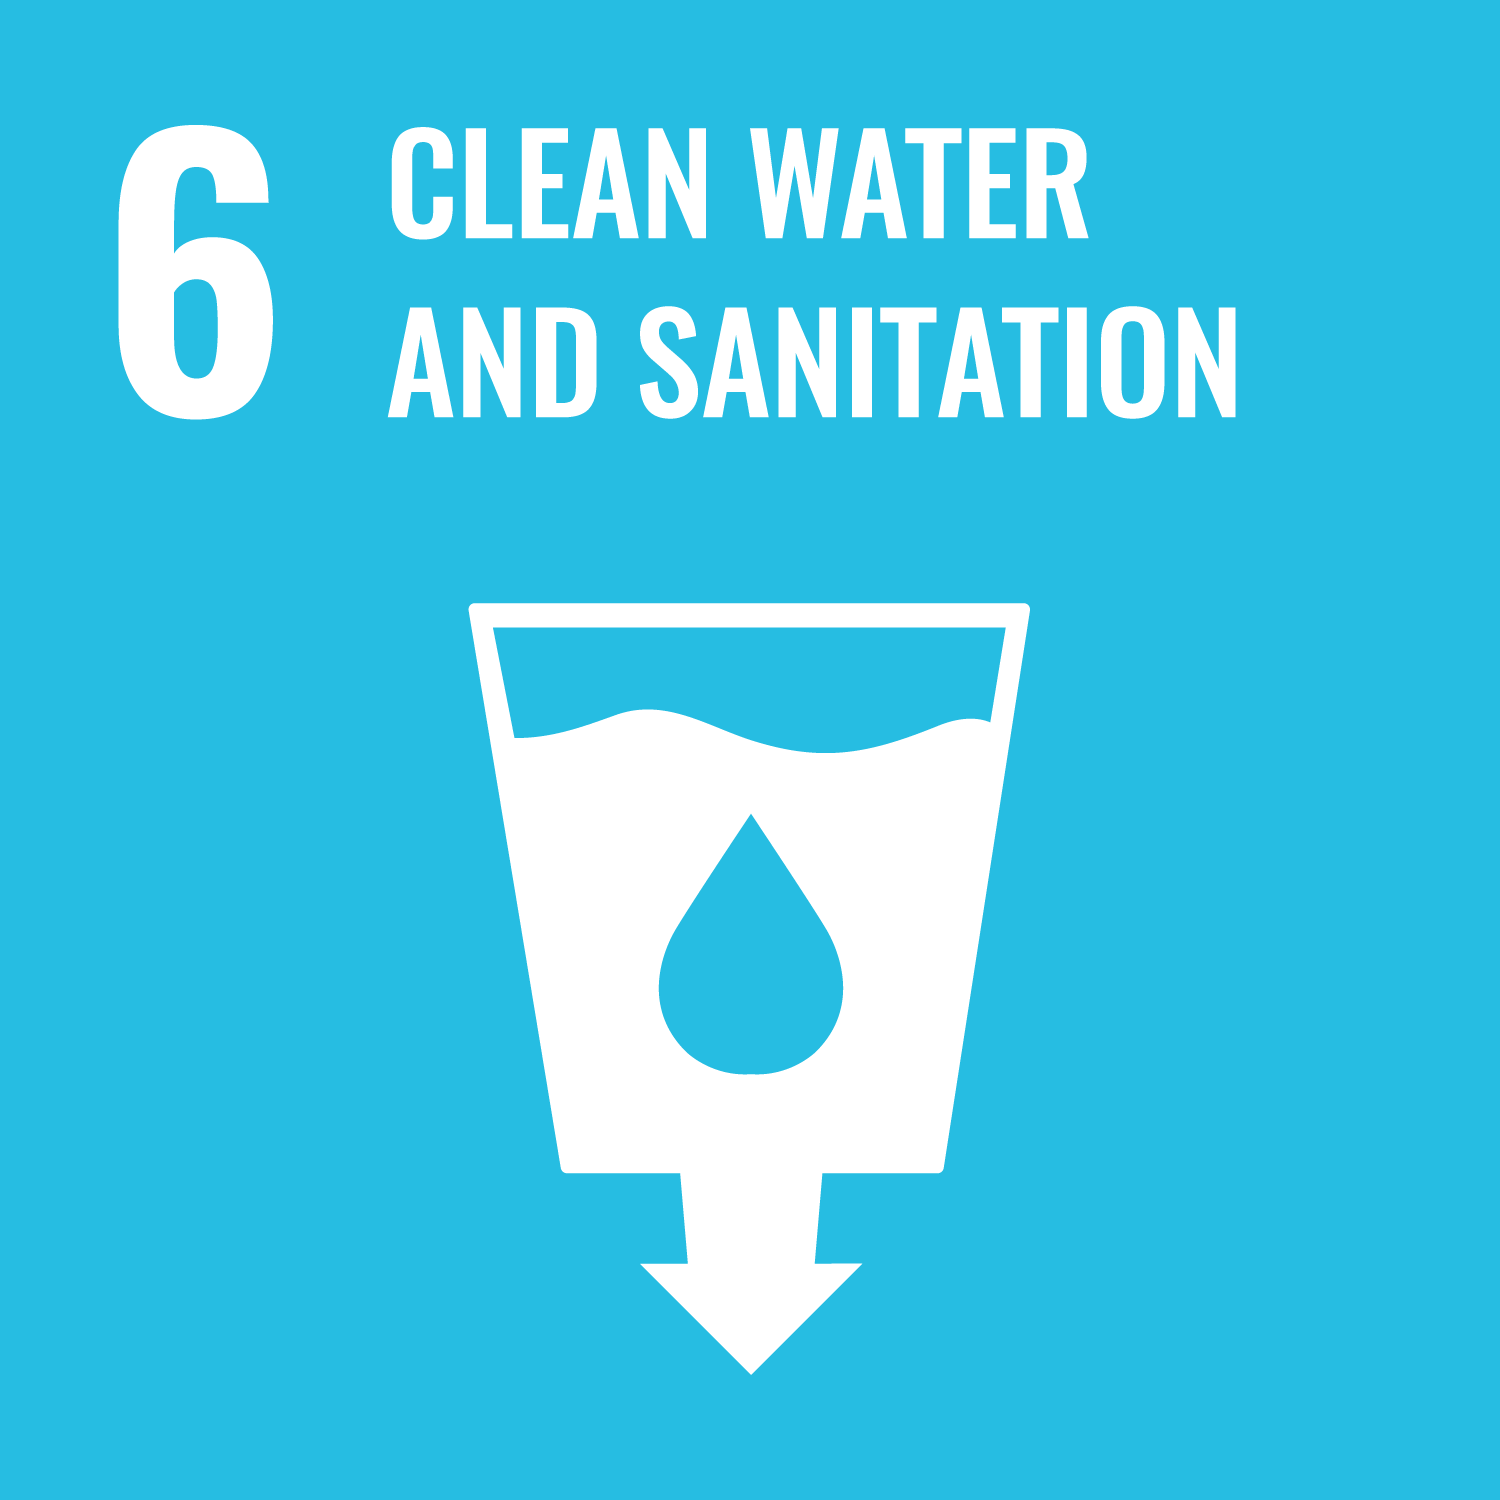 Wasser und Sanitärversorgung für alle – Verfügbarkeit und nachhaltige Bewirtschaftung von Wasser und Sanitärversorgung für alle gewährleisten.